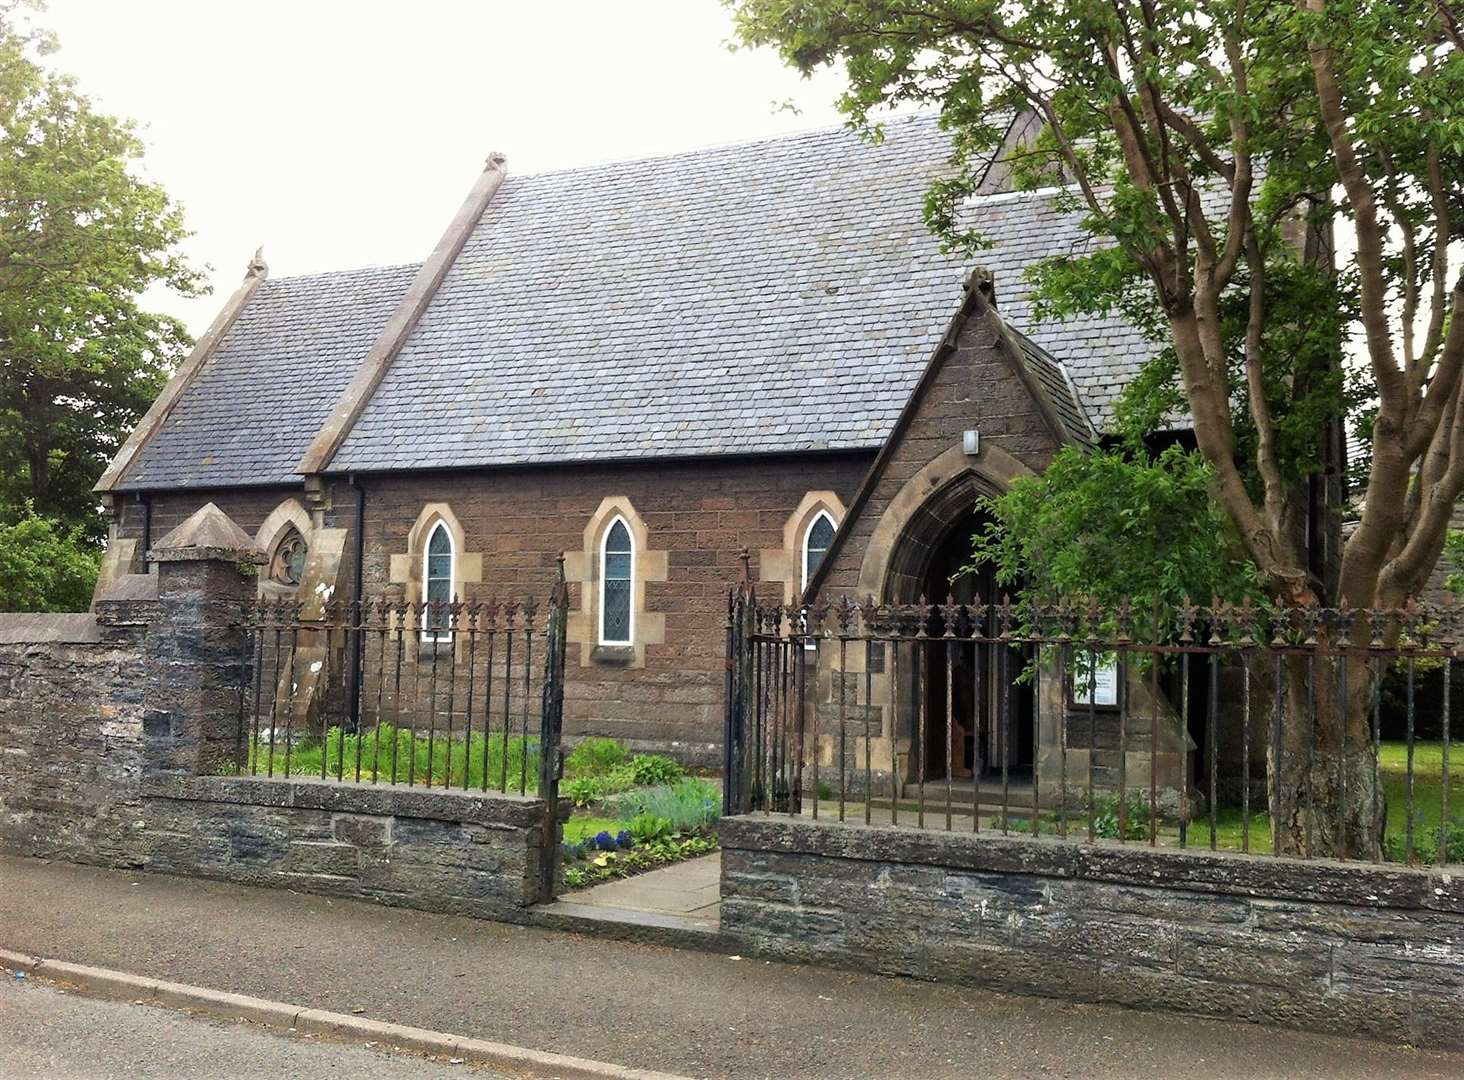 St John's church in Wick.